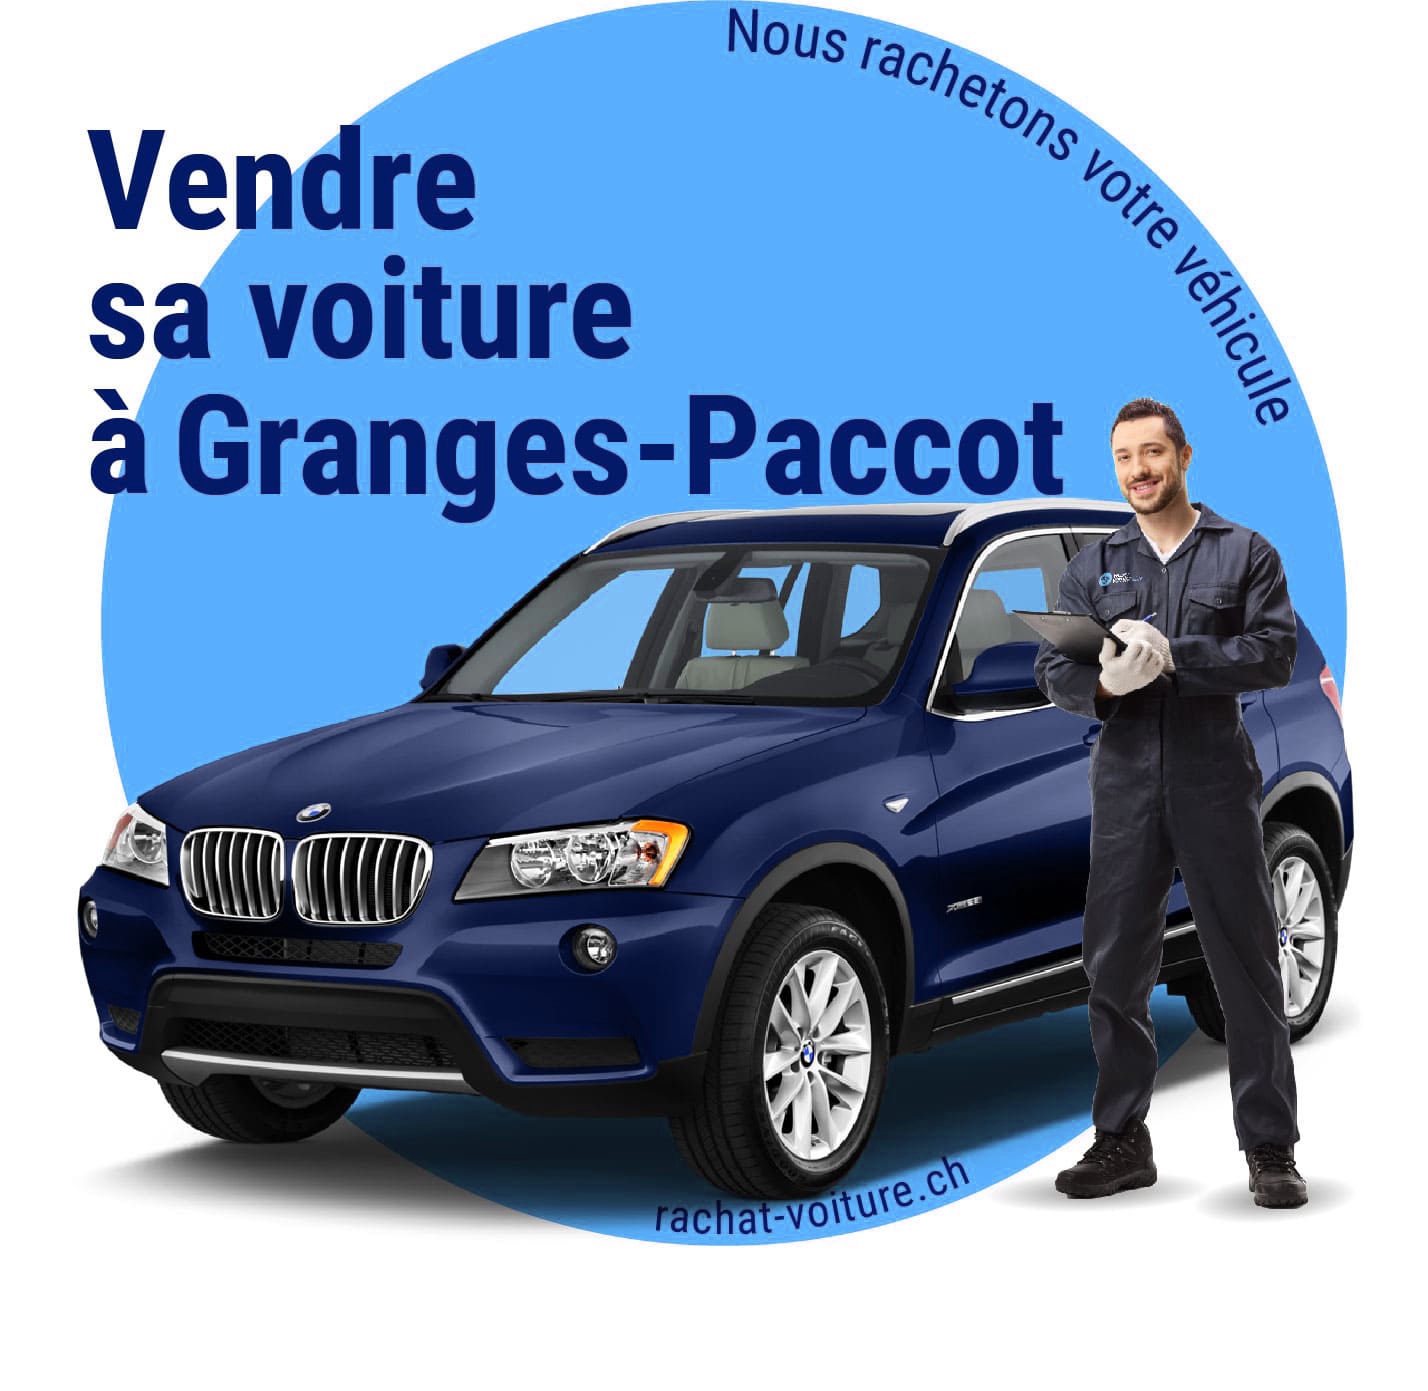 Vendre sa voiture à Granges-Paccot